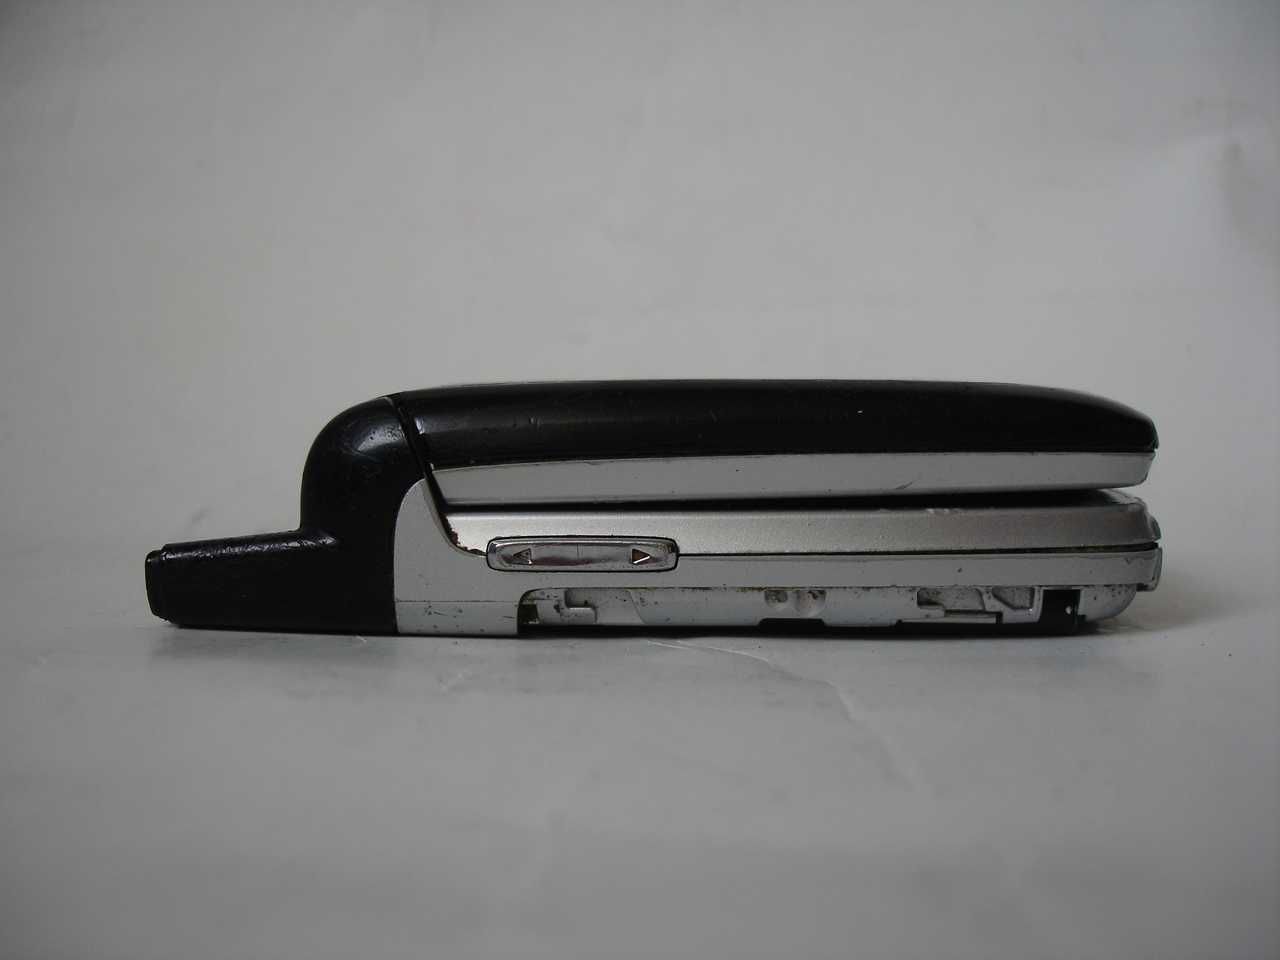 Nokia 6103 - klapka - klasyk!